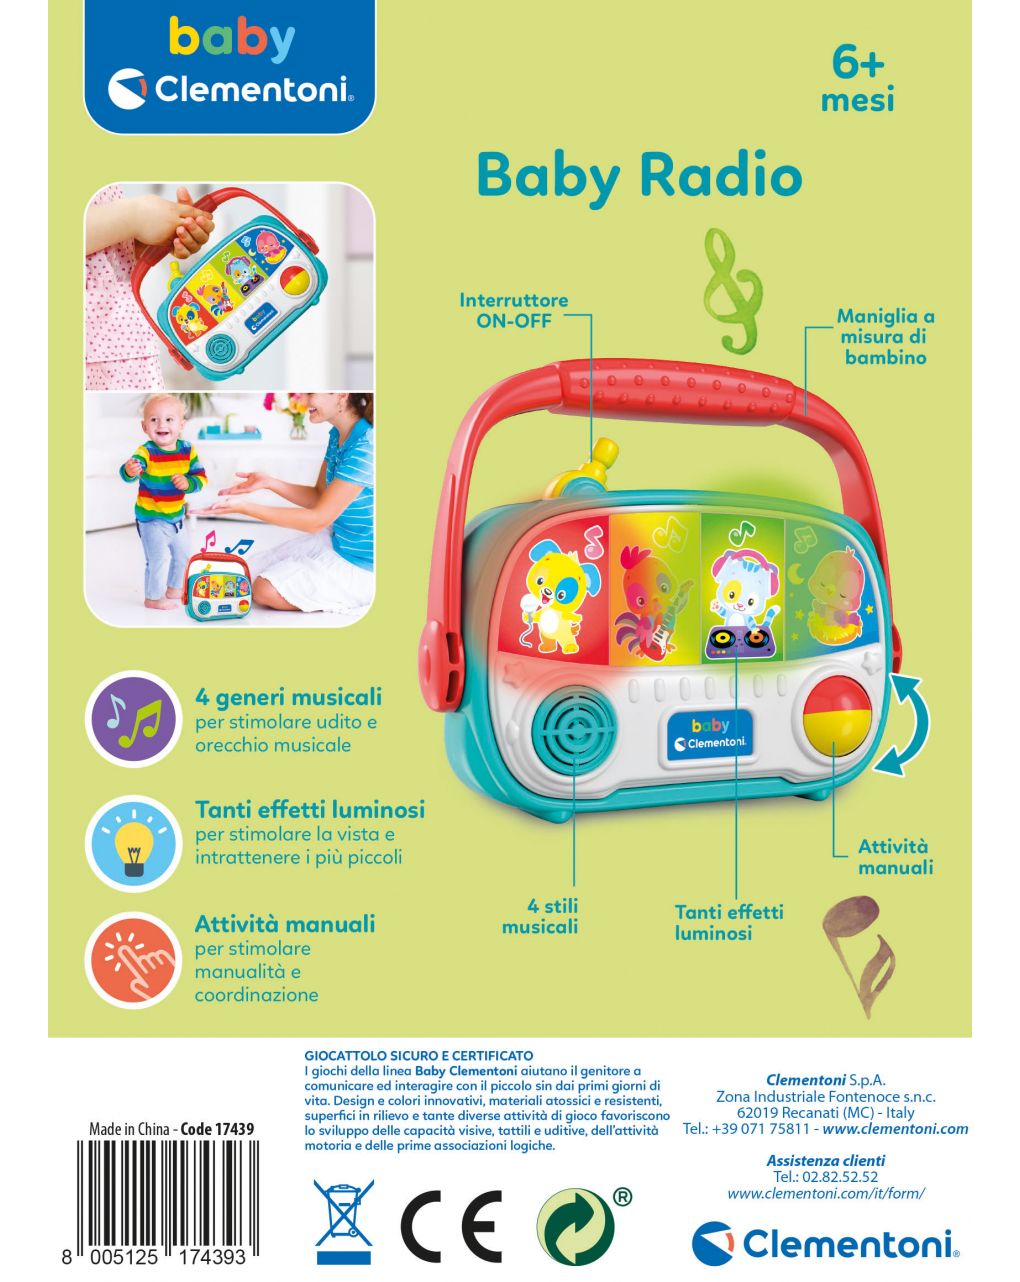 Babyclementoni - baby radio - Baby Clementoni